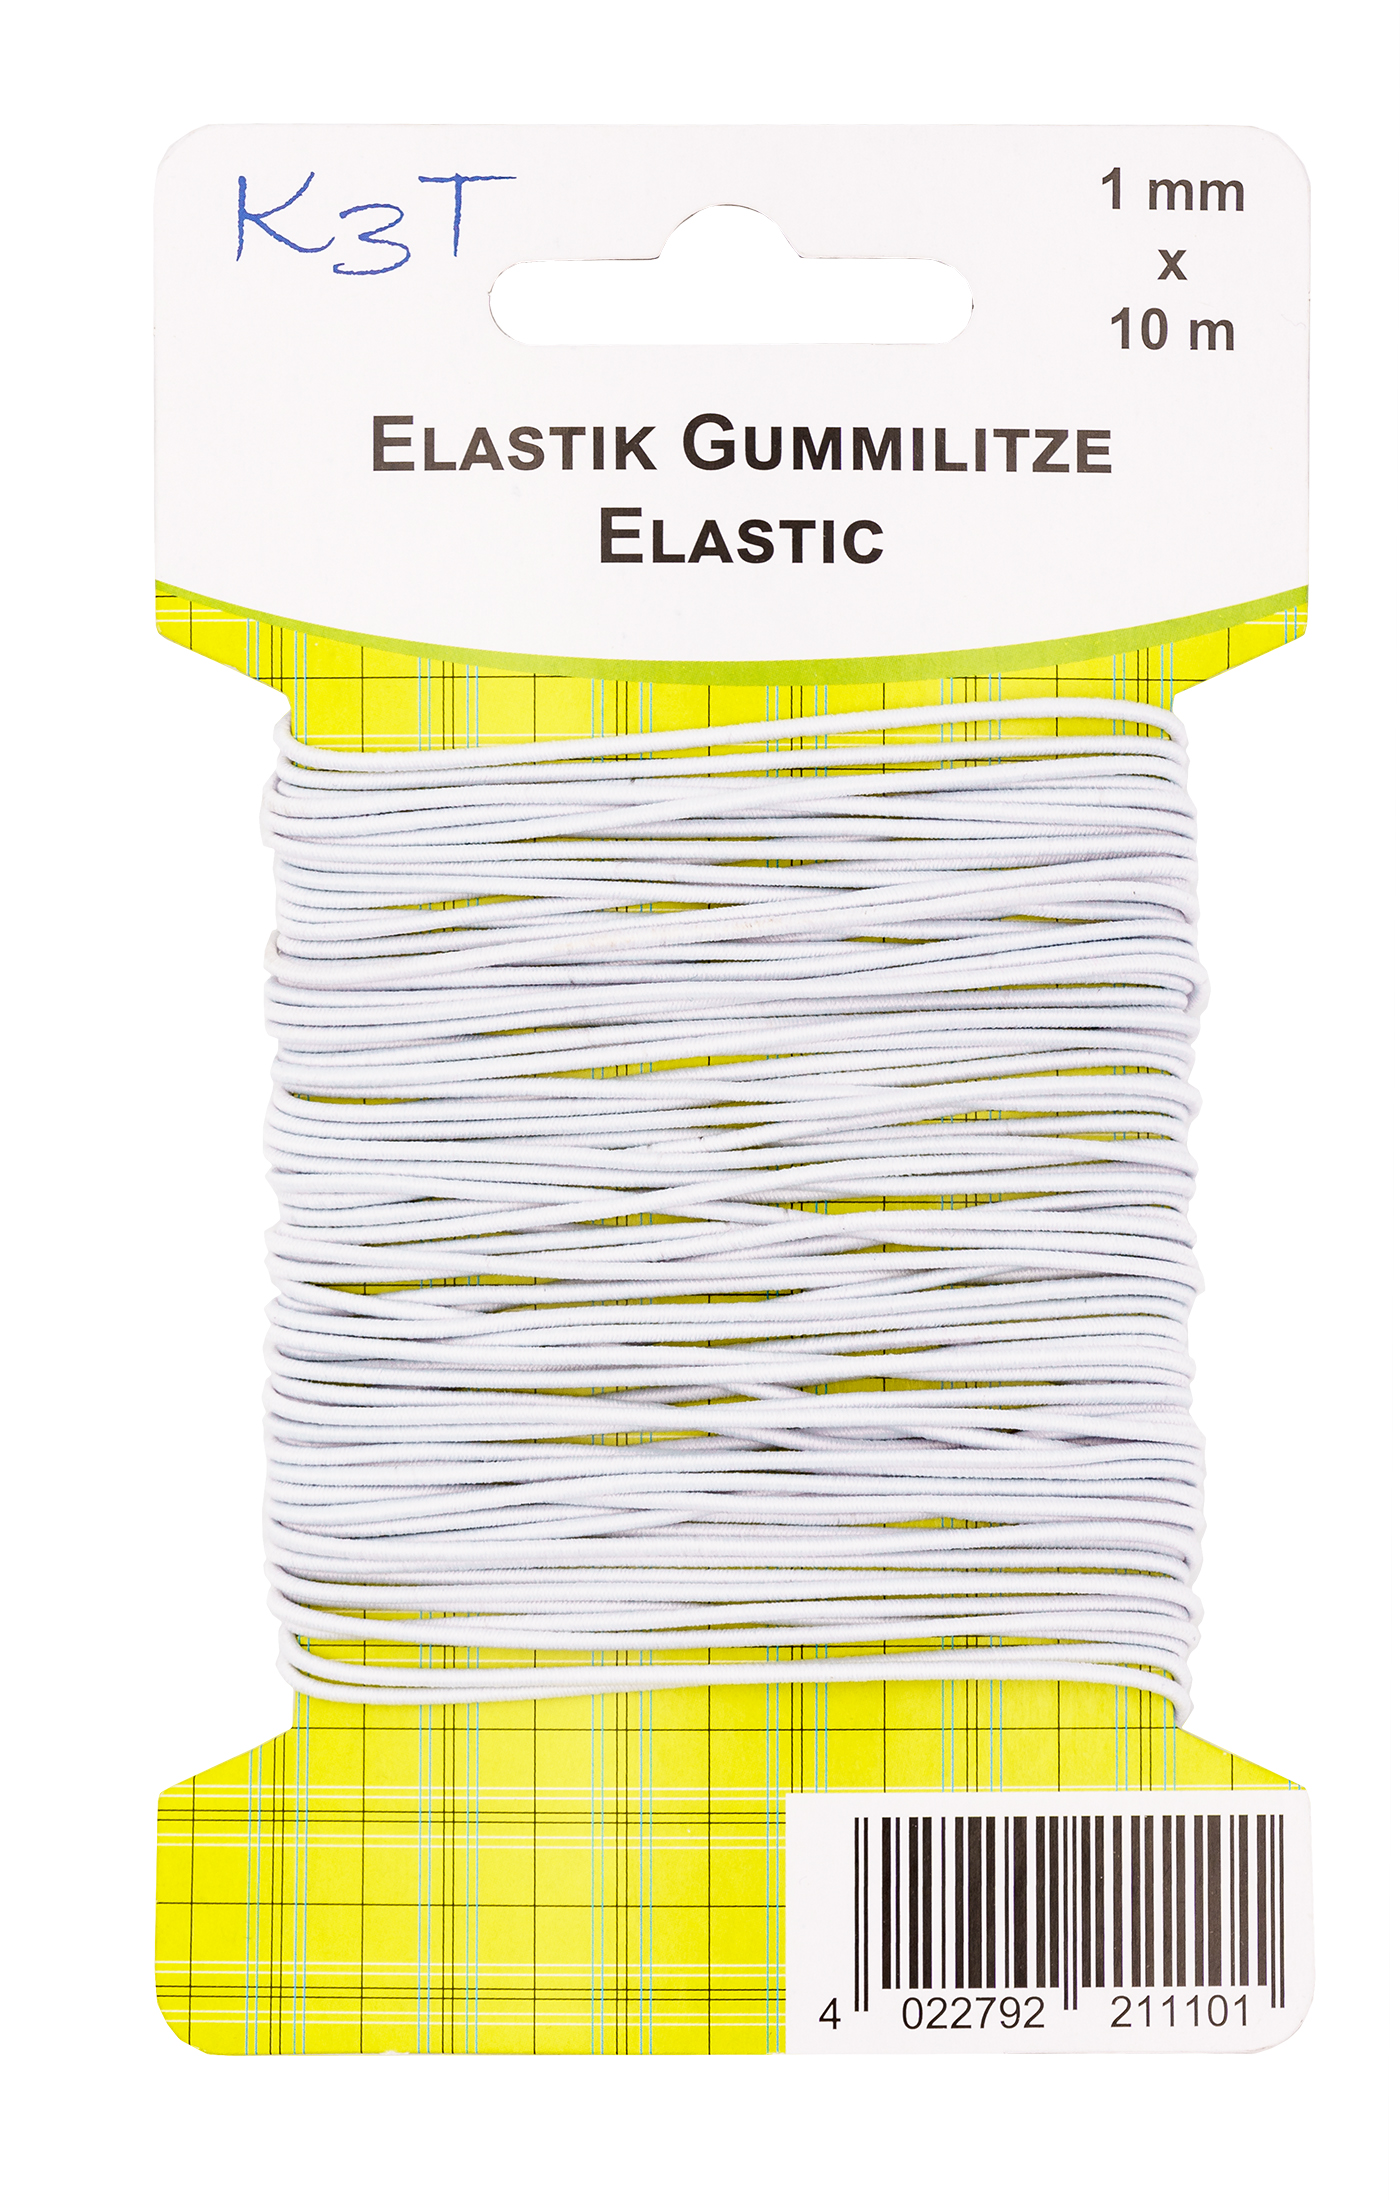 Elastic-Gummilitze rund 1 mm x 10 m, weiß